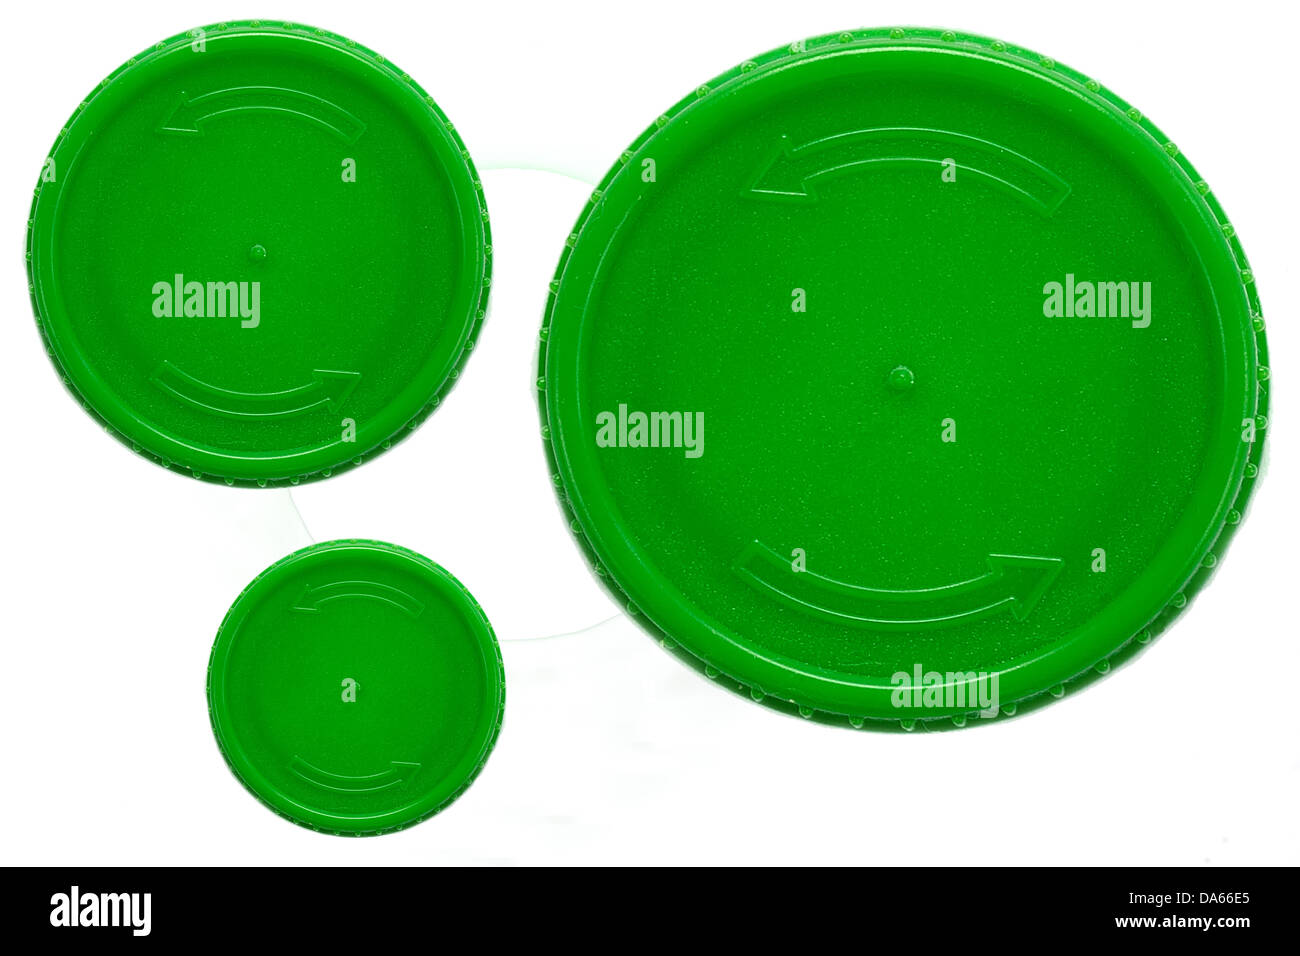 Cerchio di plastica immagini e fotografie stock ad alta risoluzione - Alamy